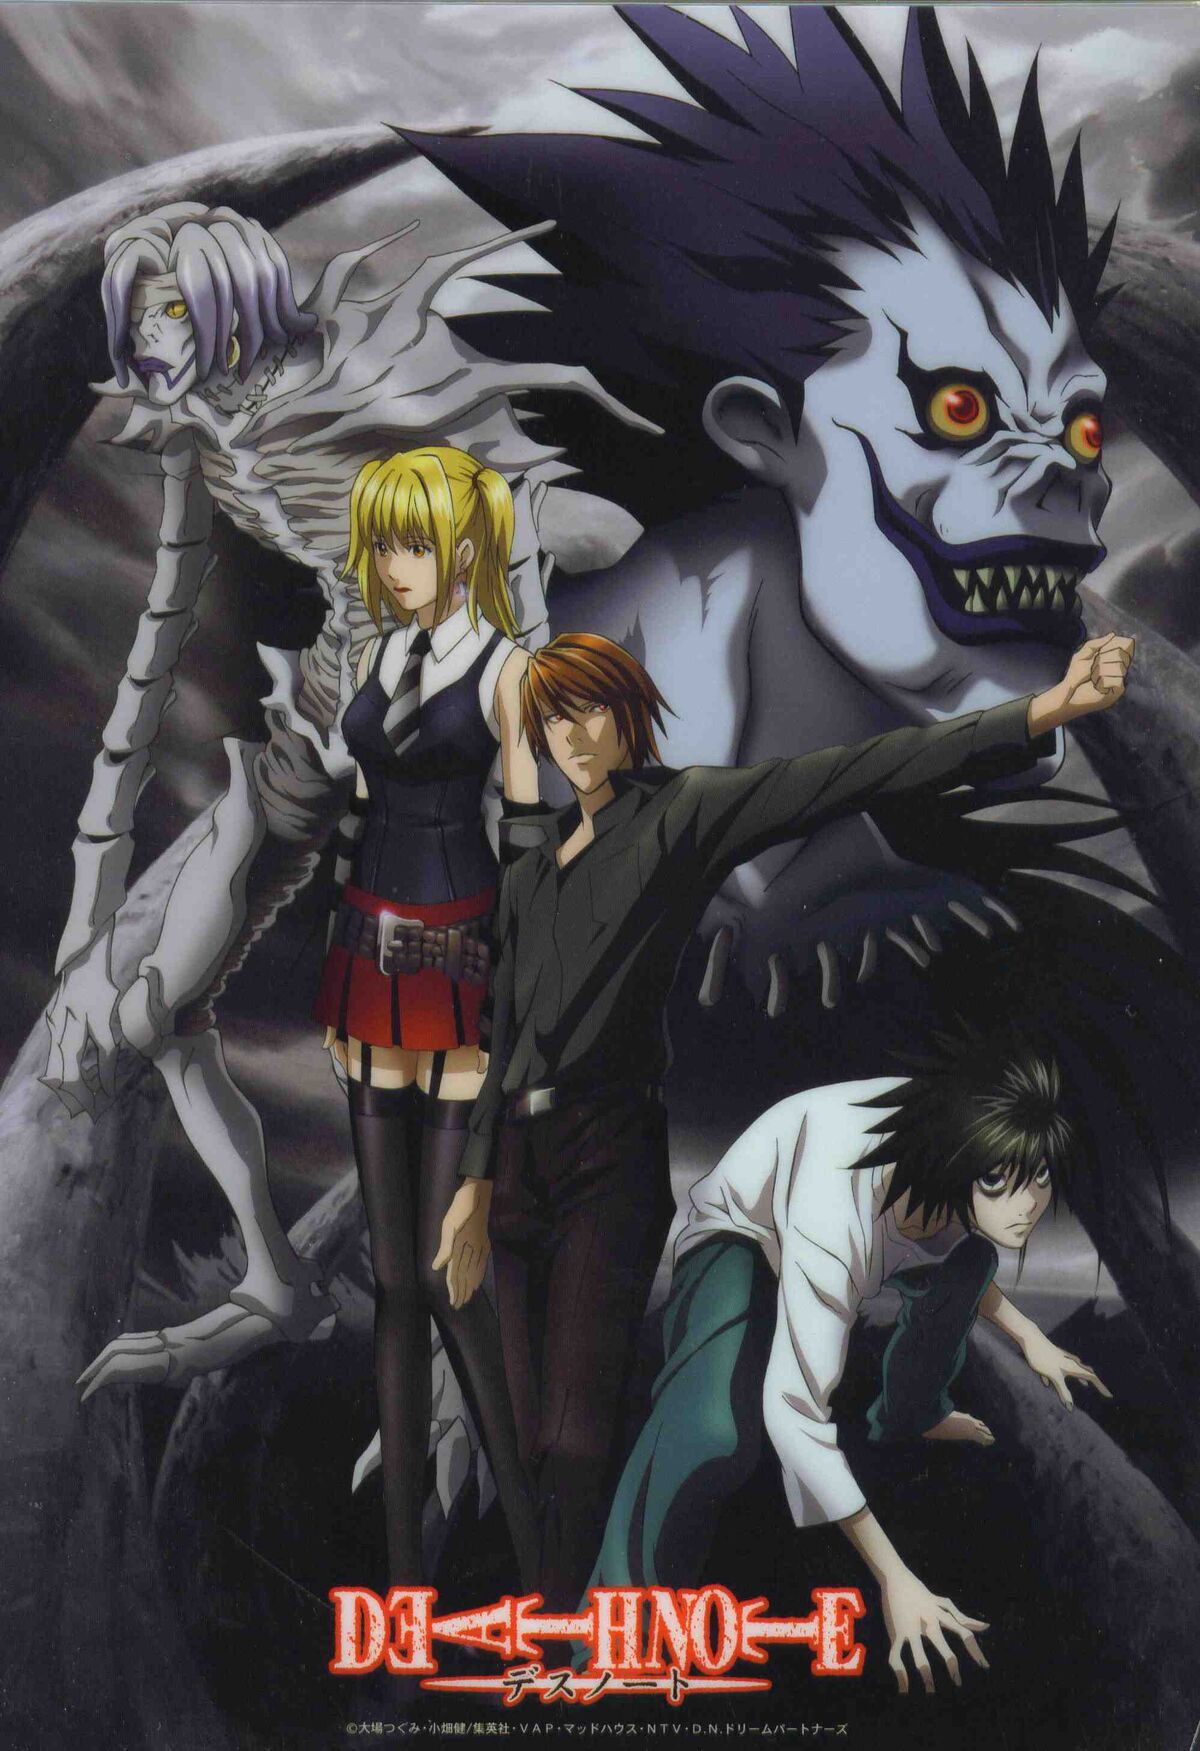 5 Animes Parecidos A La Death Note 